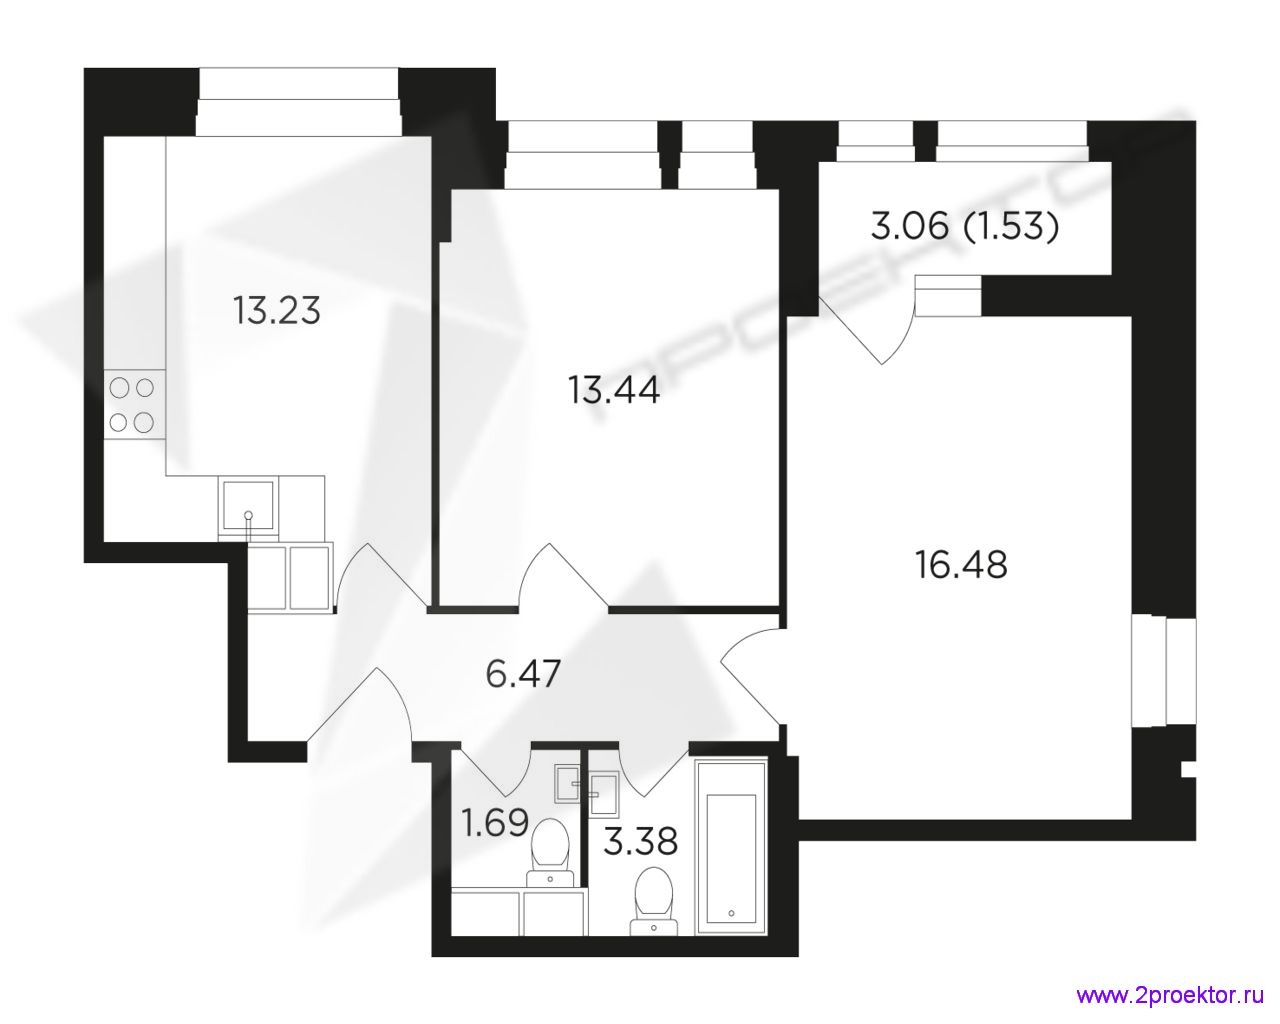 Типовой вариант планировки двухкомнатной квартиры в Жилом комплексе Преображение.